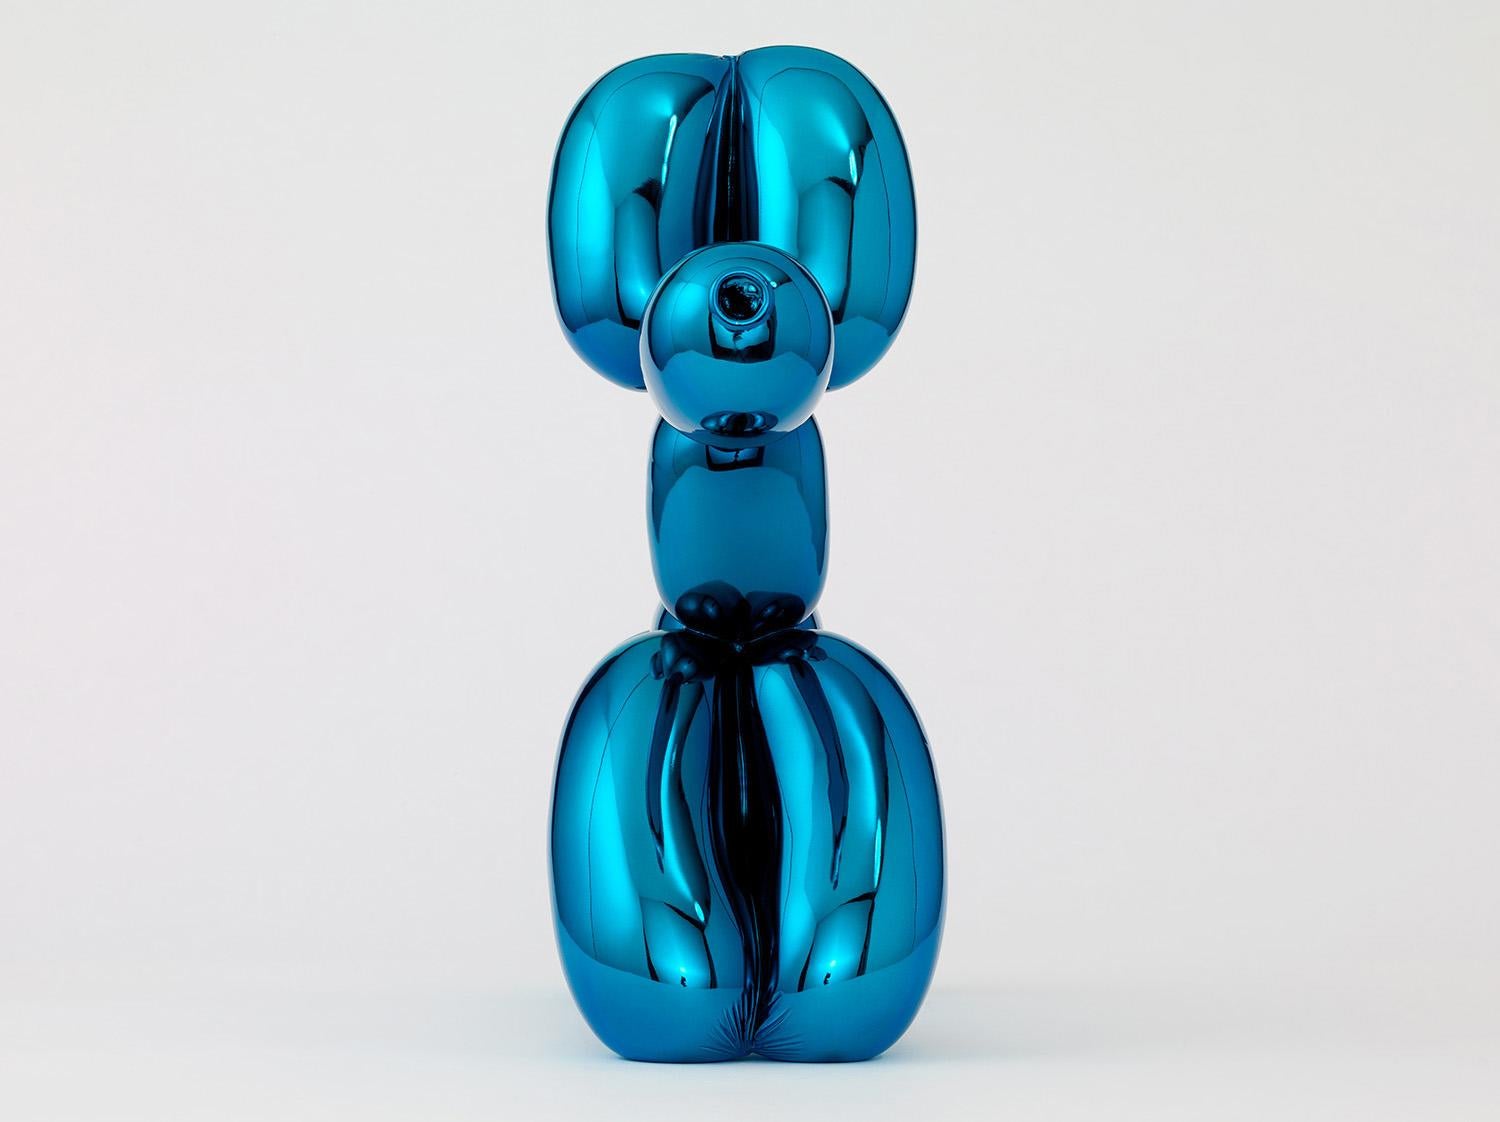 Le ballon du chien (bleu) - Contemporain Sculpture par Jeff Koons